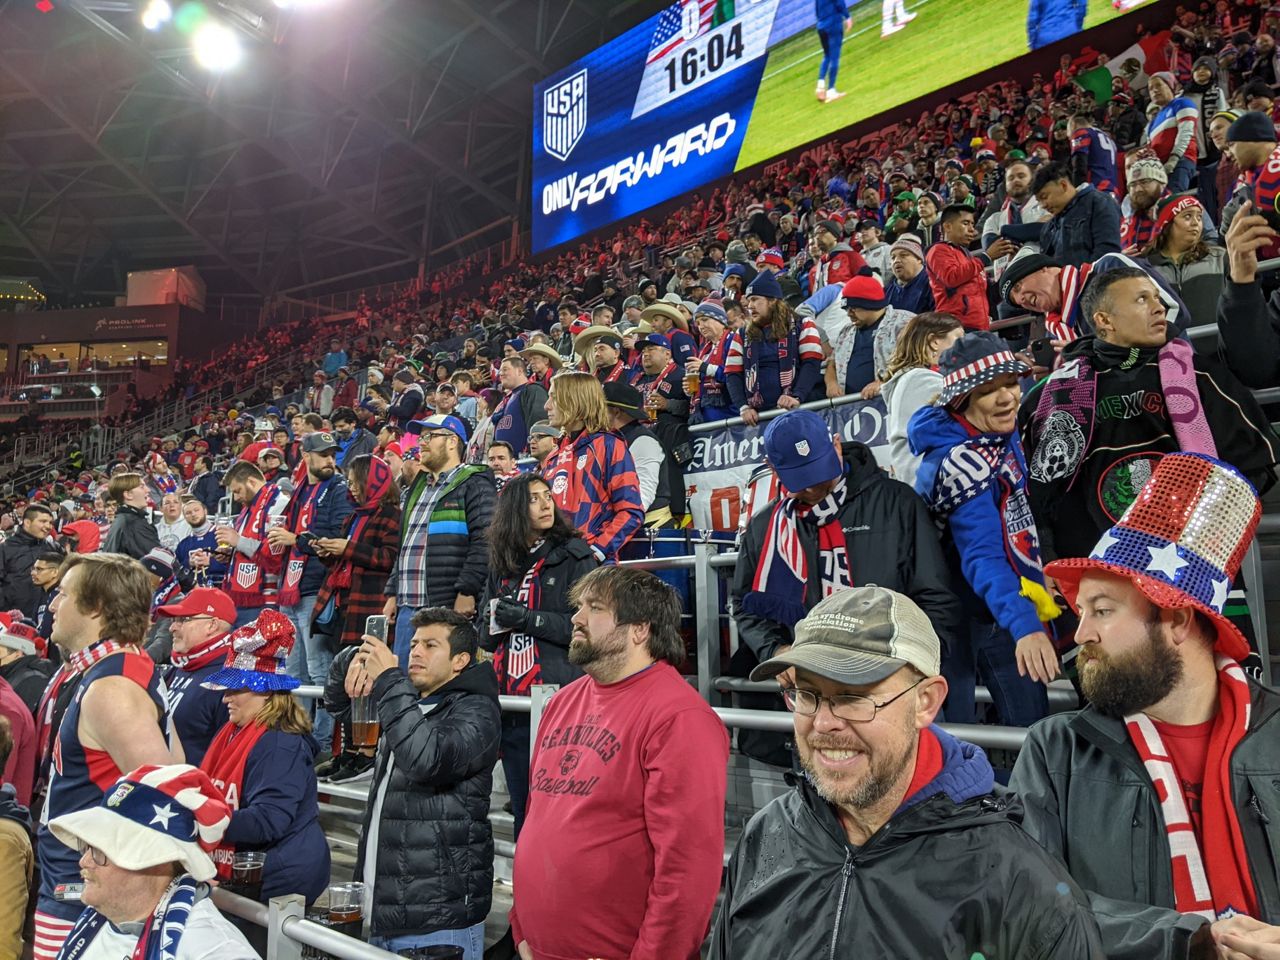 Des supporters à l'intérieur du stade pour les éliminatoires de la Coupe du monde USA/Mexique à Cincinnati, Ohio, le 12 novembre 2021 (Todd Smith/American Outlaws)